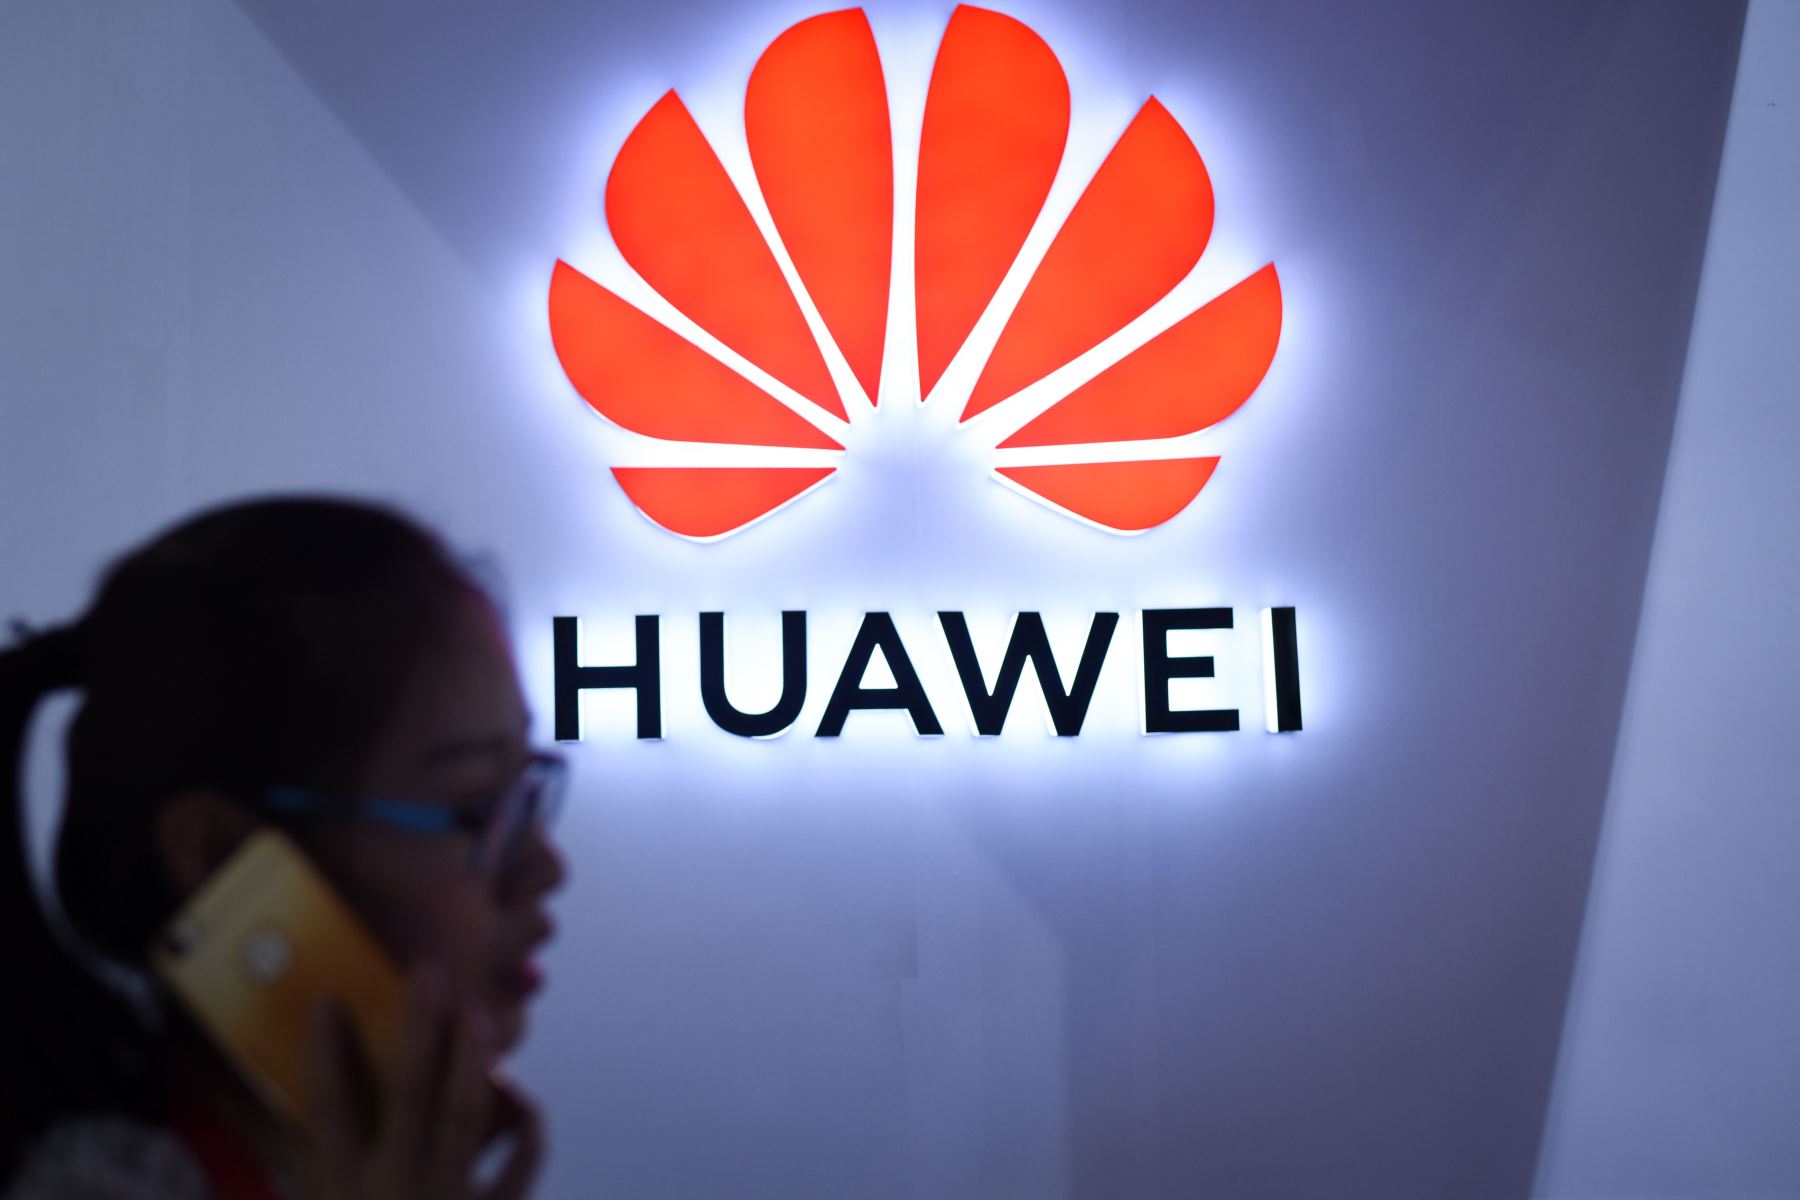 Prensa china acusa EEUU de querer acabar con supremacía de Huawei